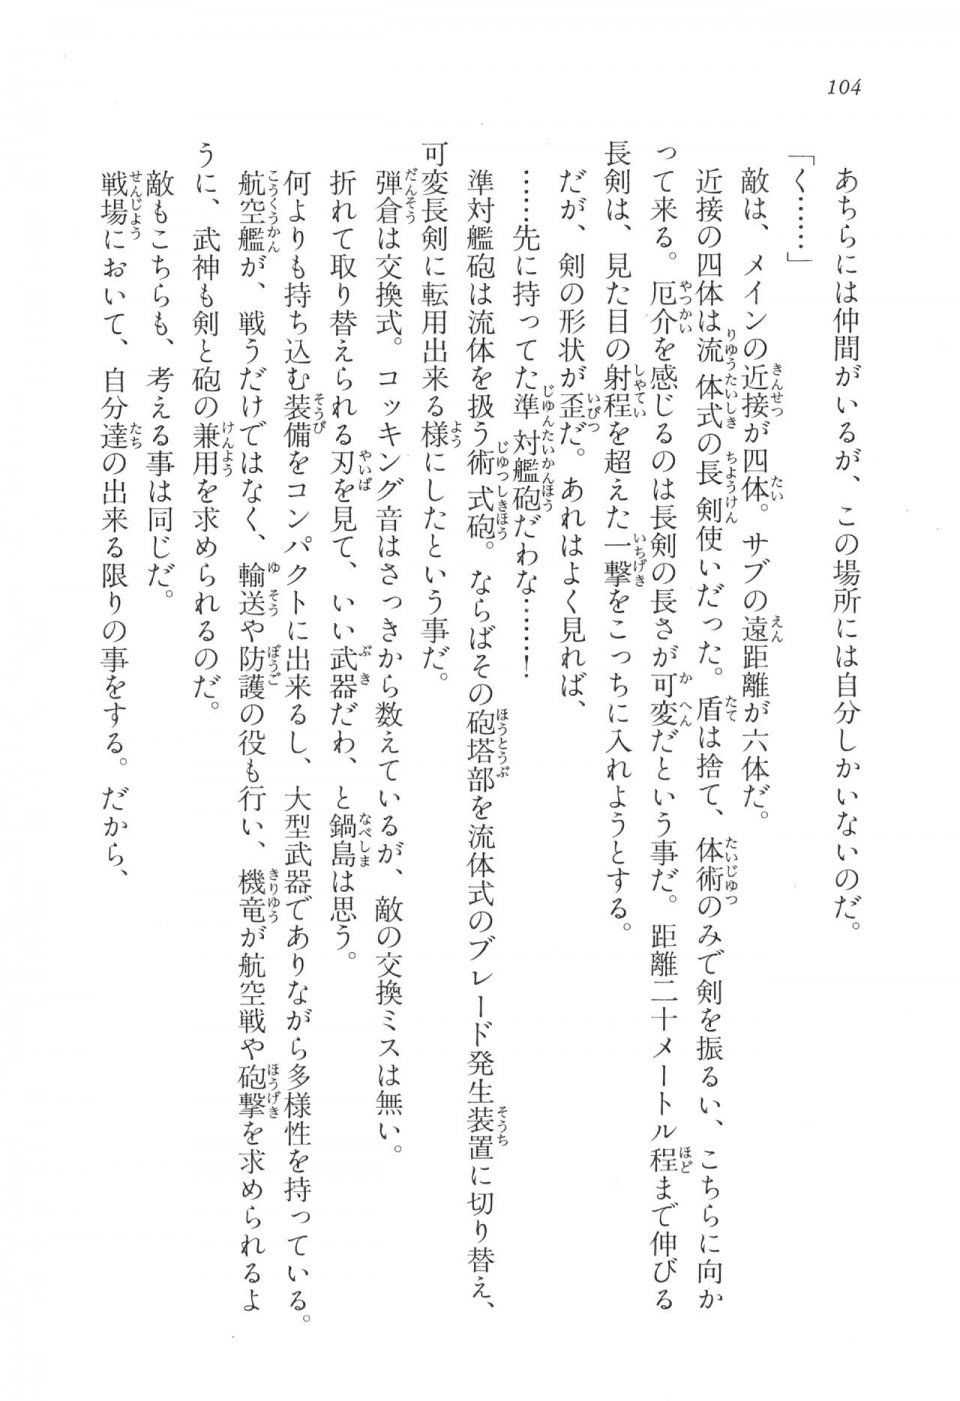 Kyoukai Senjou no Horizon LN Vol 17(7B) - Photo #104